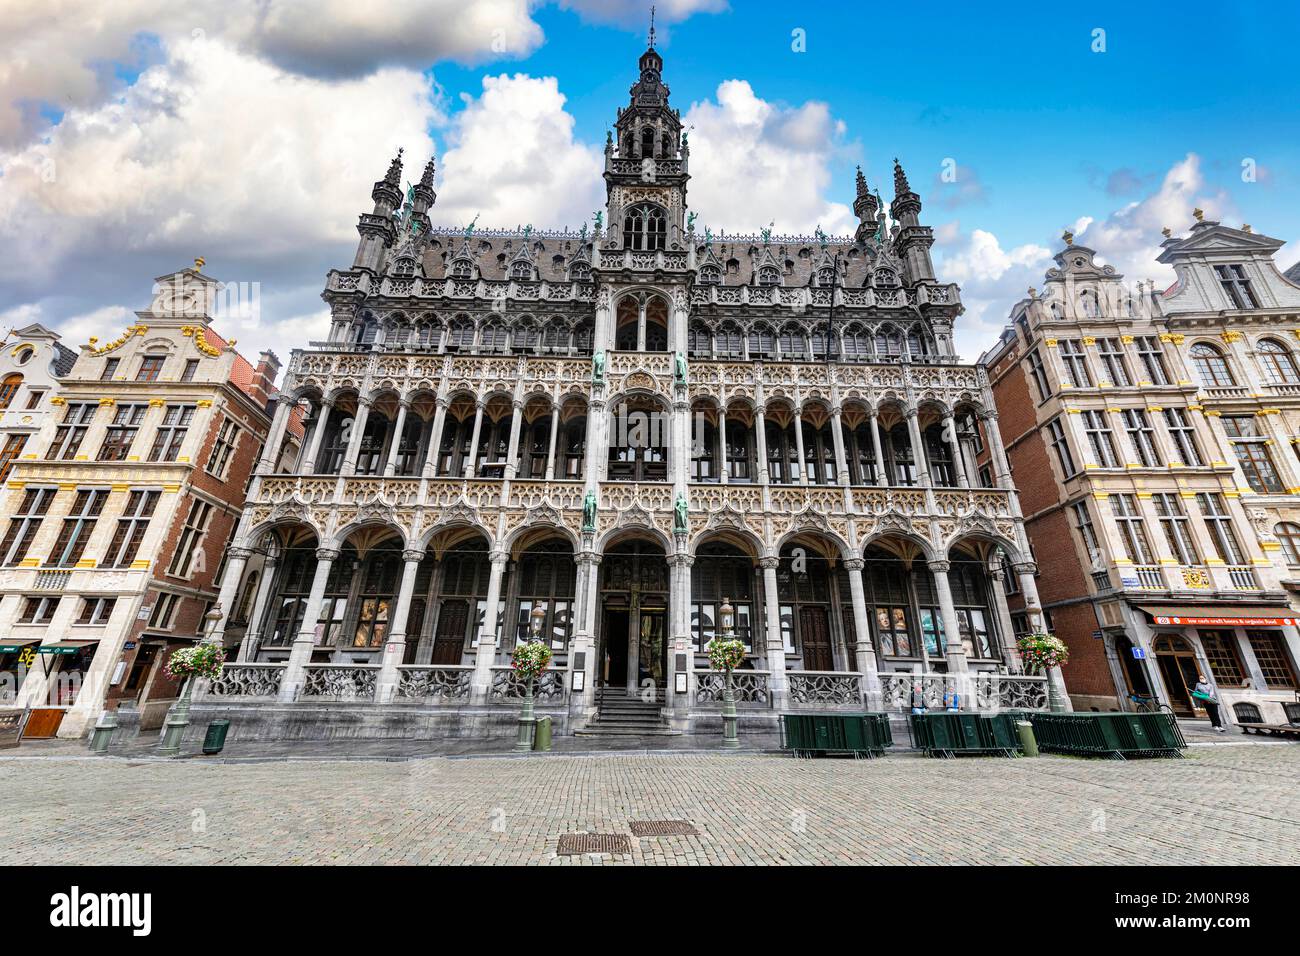 Musée de la ville de Bruxelles dans le site du patrimoine mondial de l'UNESCO Grand place la place centrale de Bruxelles, Belgique, Europe Banque D'Images